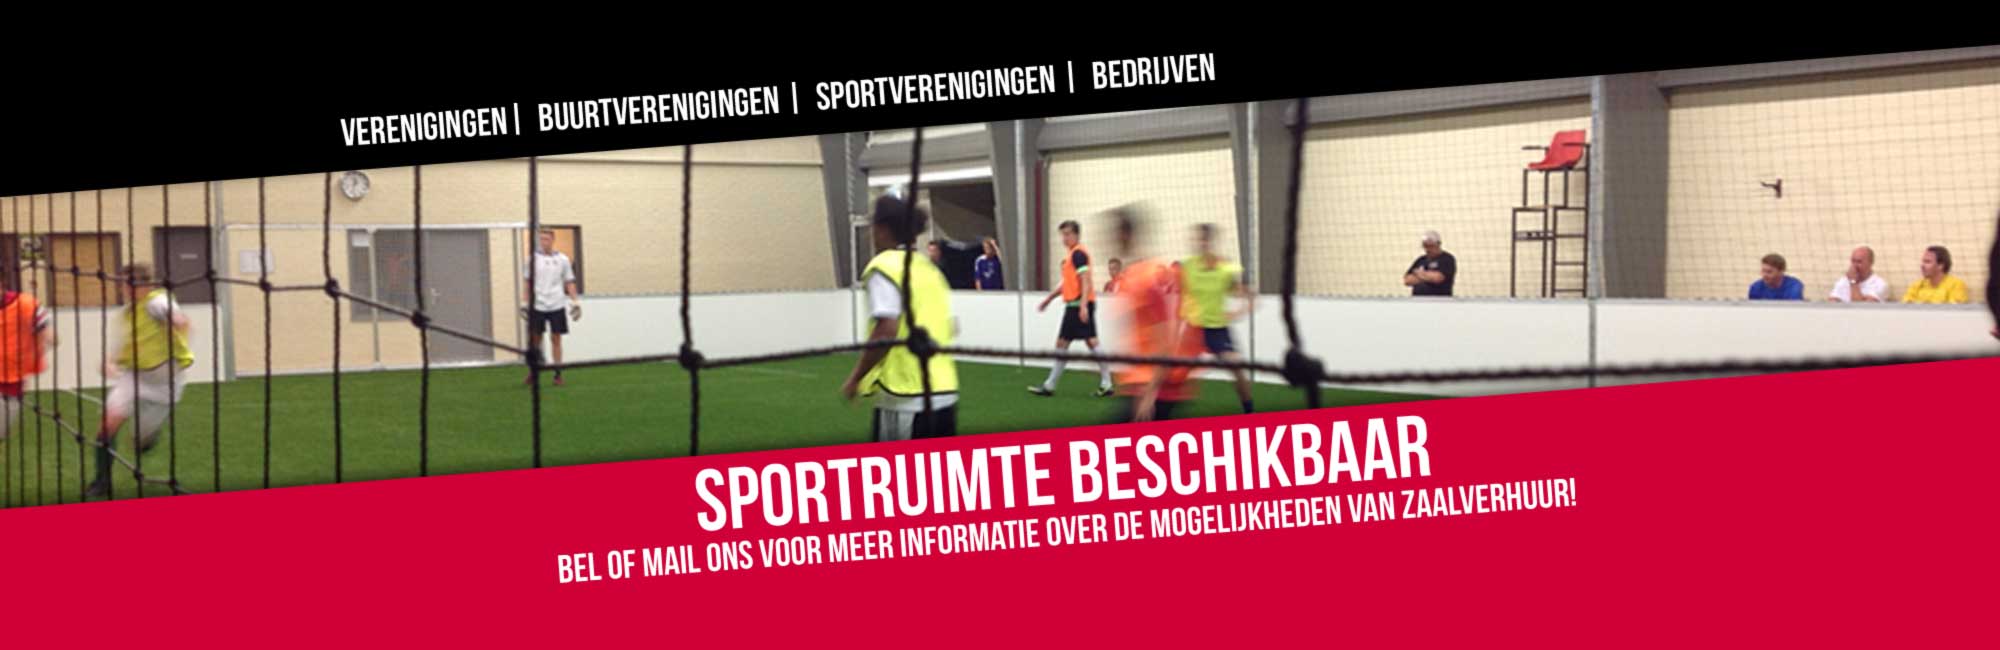 (c) Sporthalhoeveland.nl